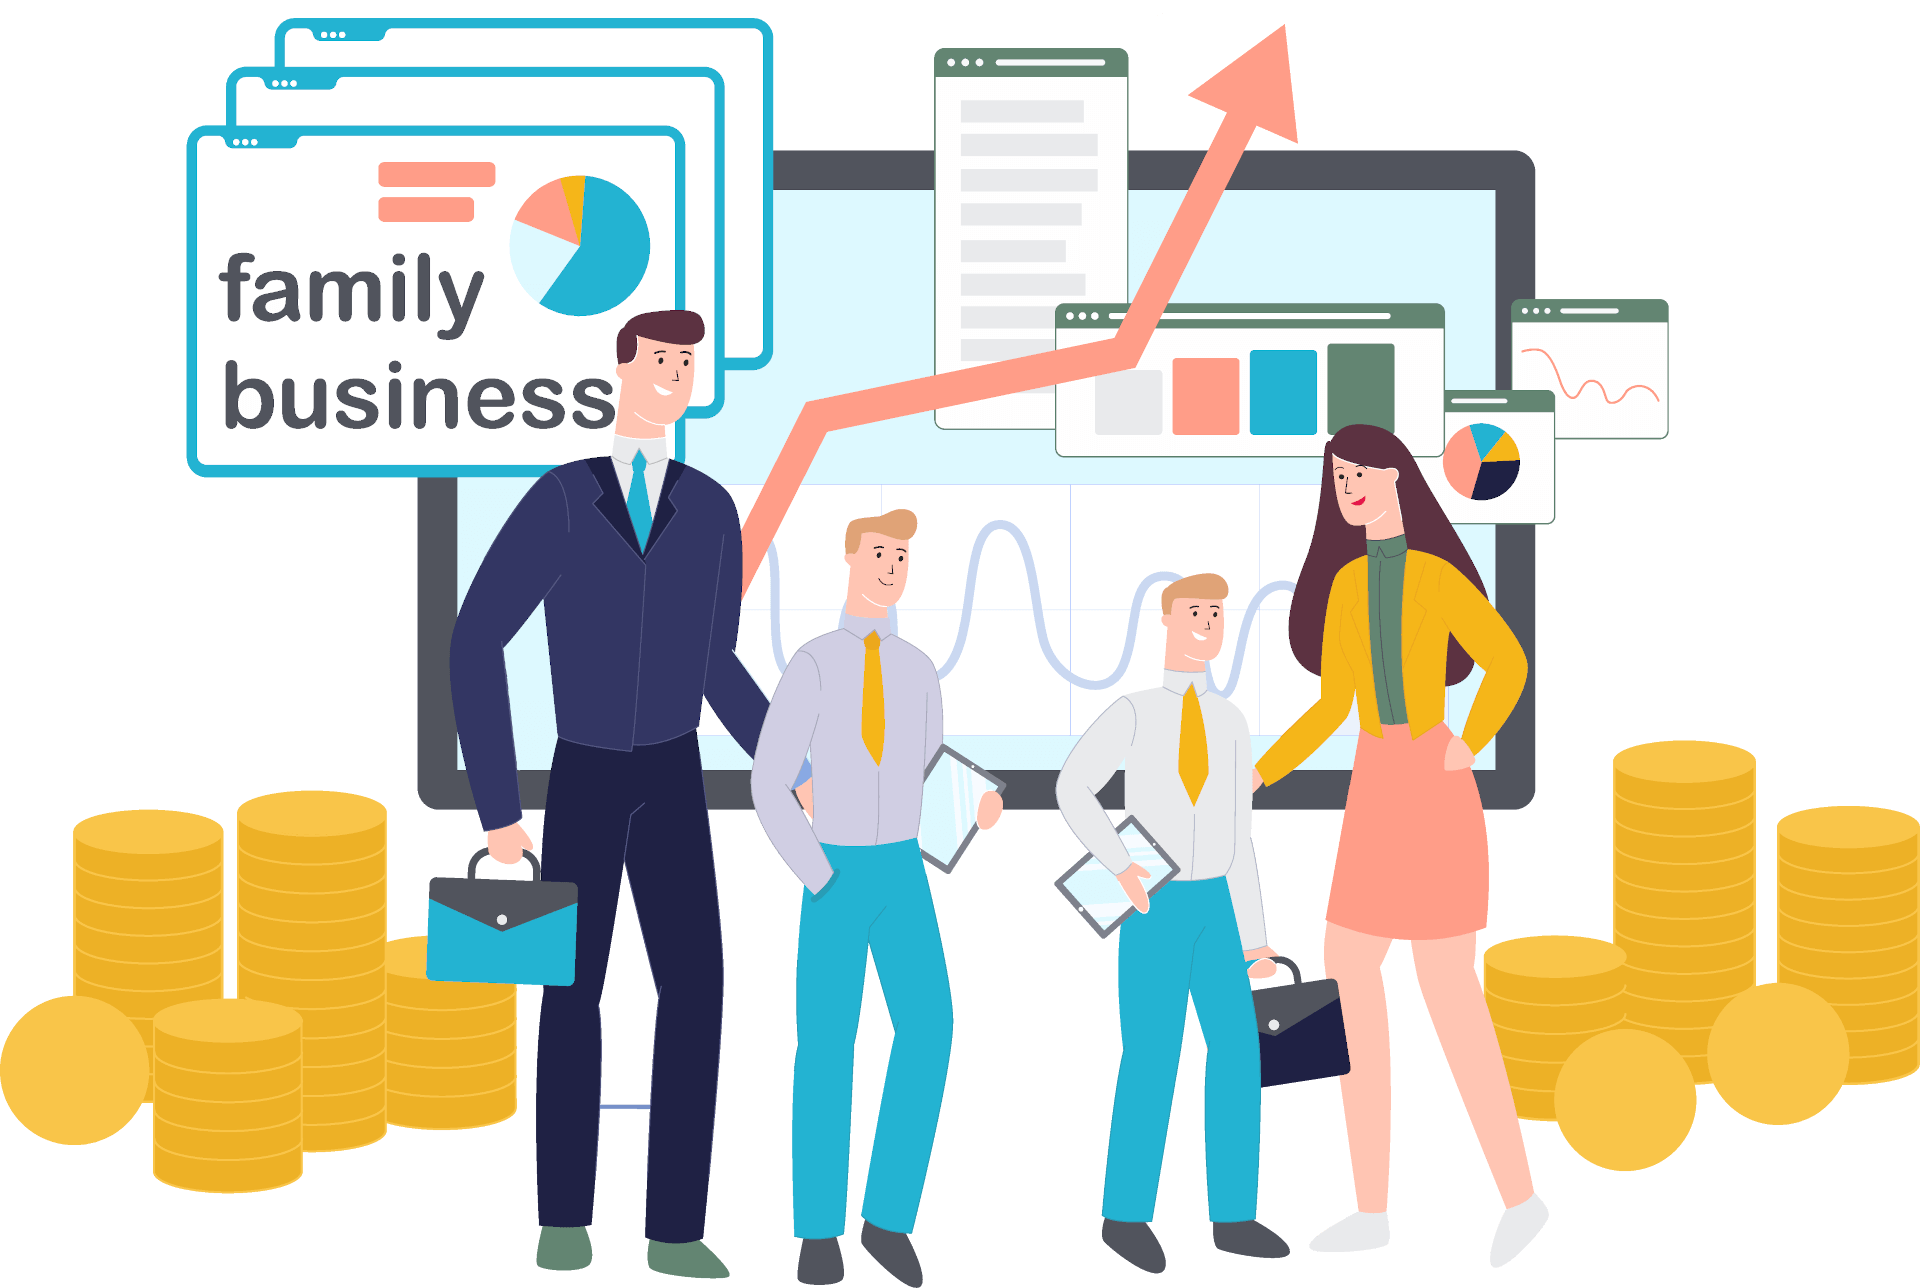 Family business scene